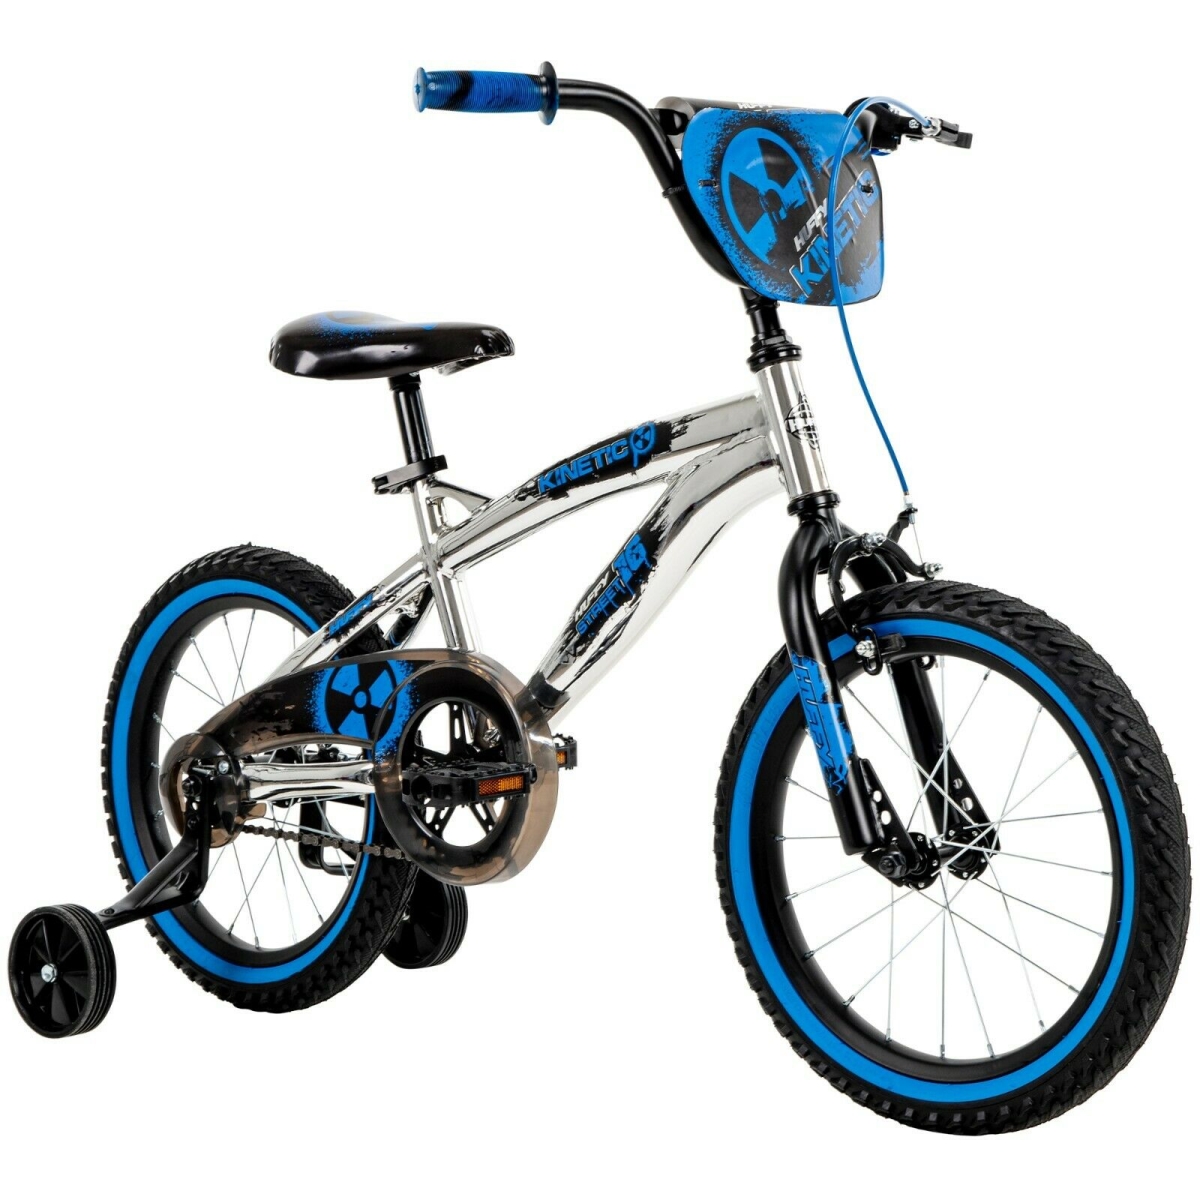 Huffy 21820 16 in. Kinetic Kids Bike, Chrome - One Size